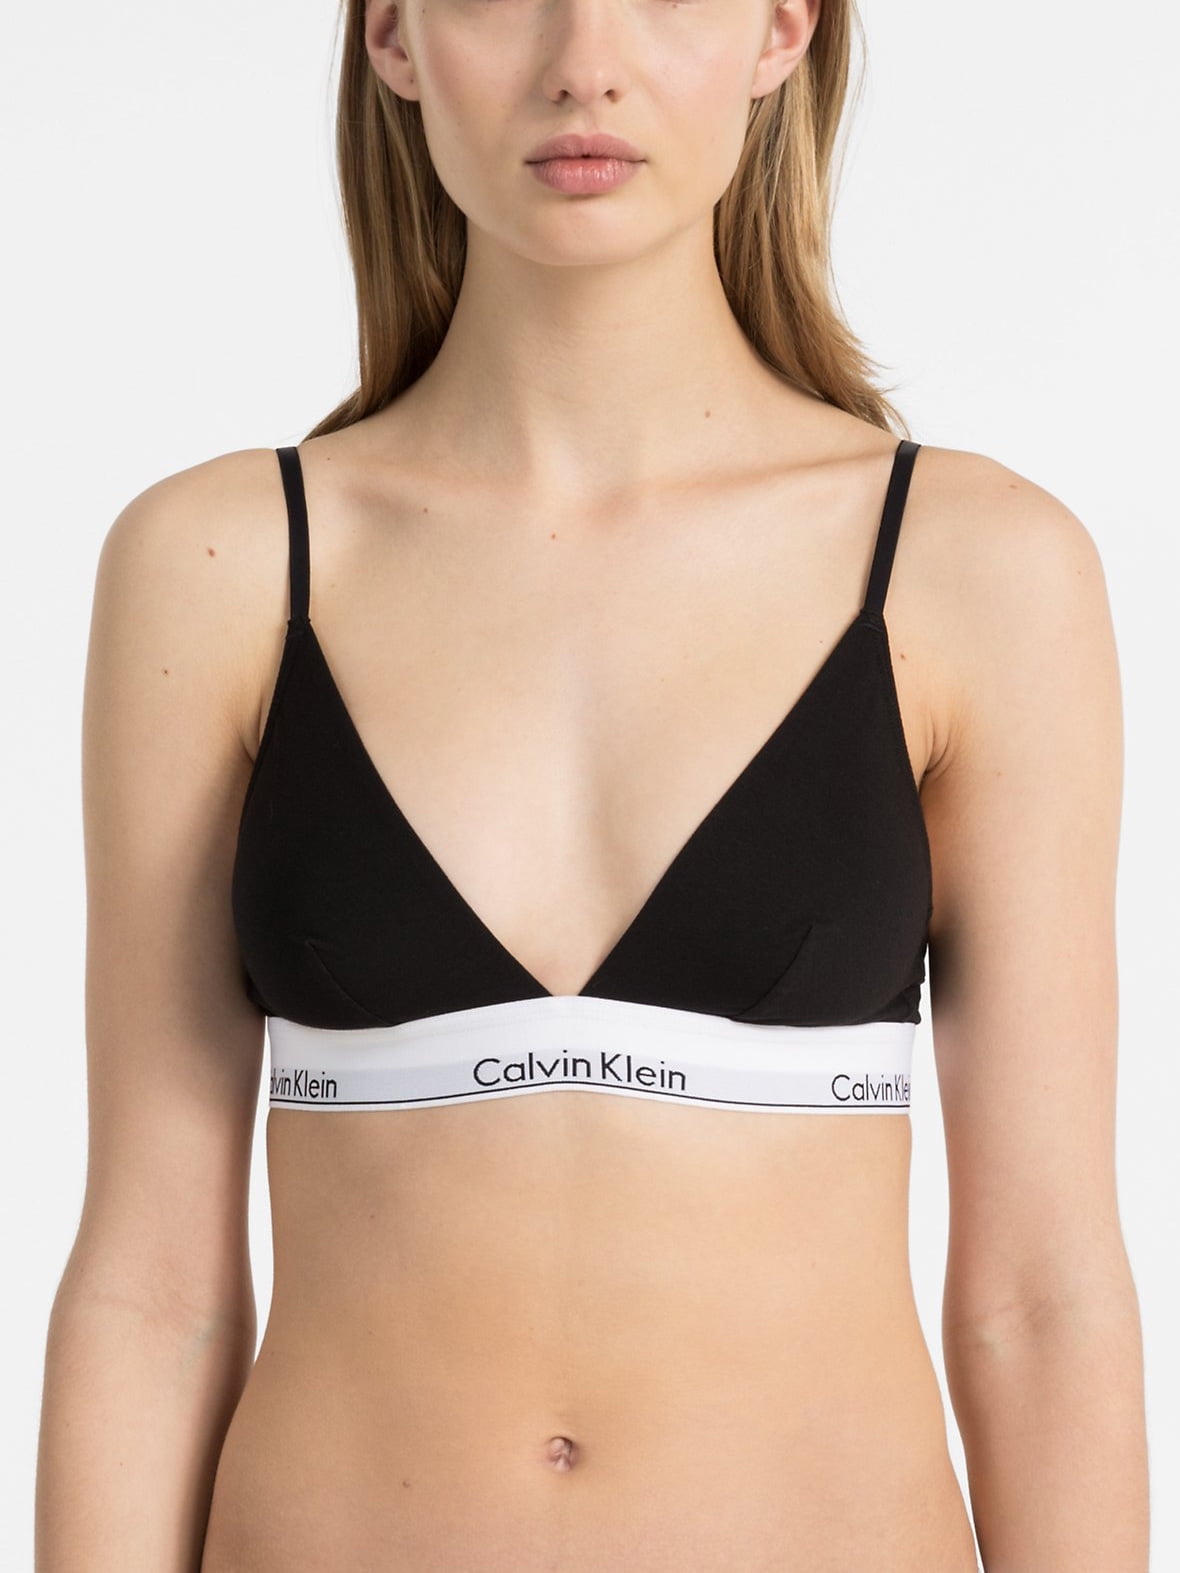 Buy Calvin Klein womens Modern Cotton Unlined Wireless Bralette Bra Online  at desertcartINDIA